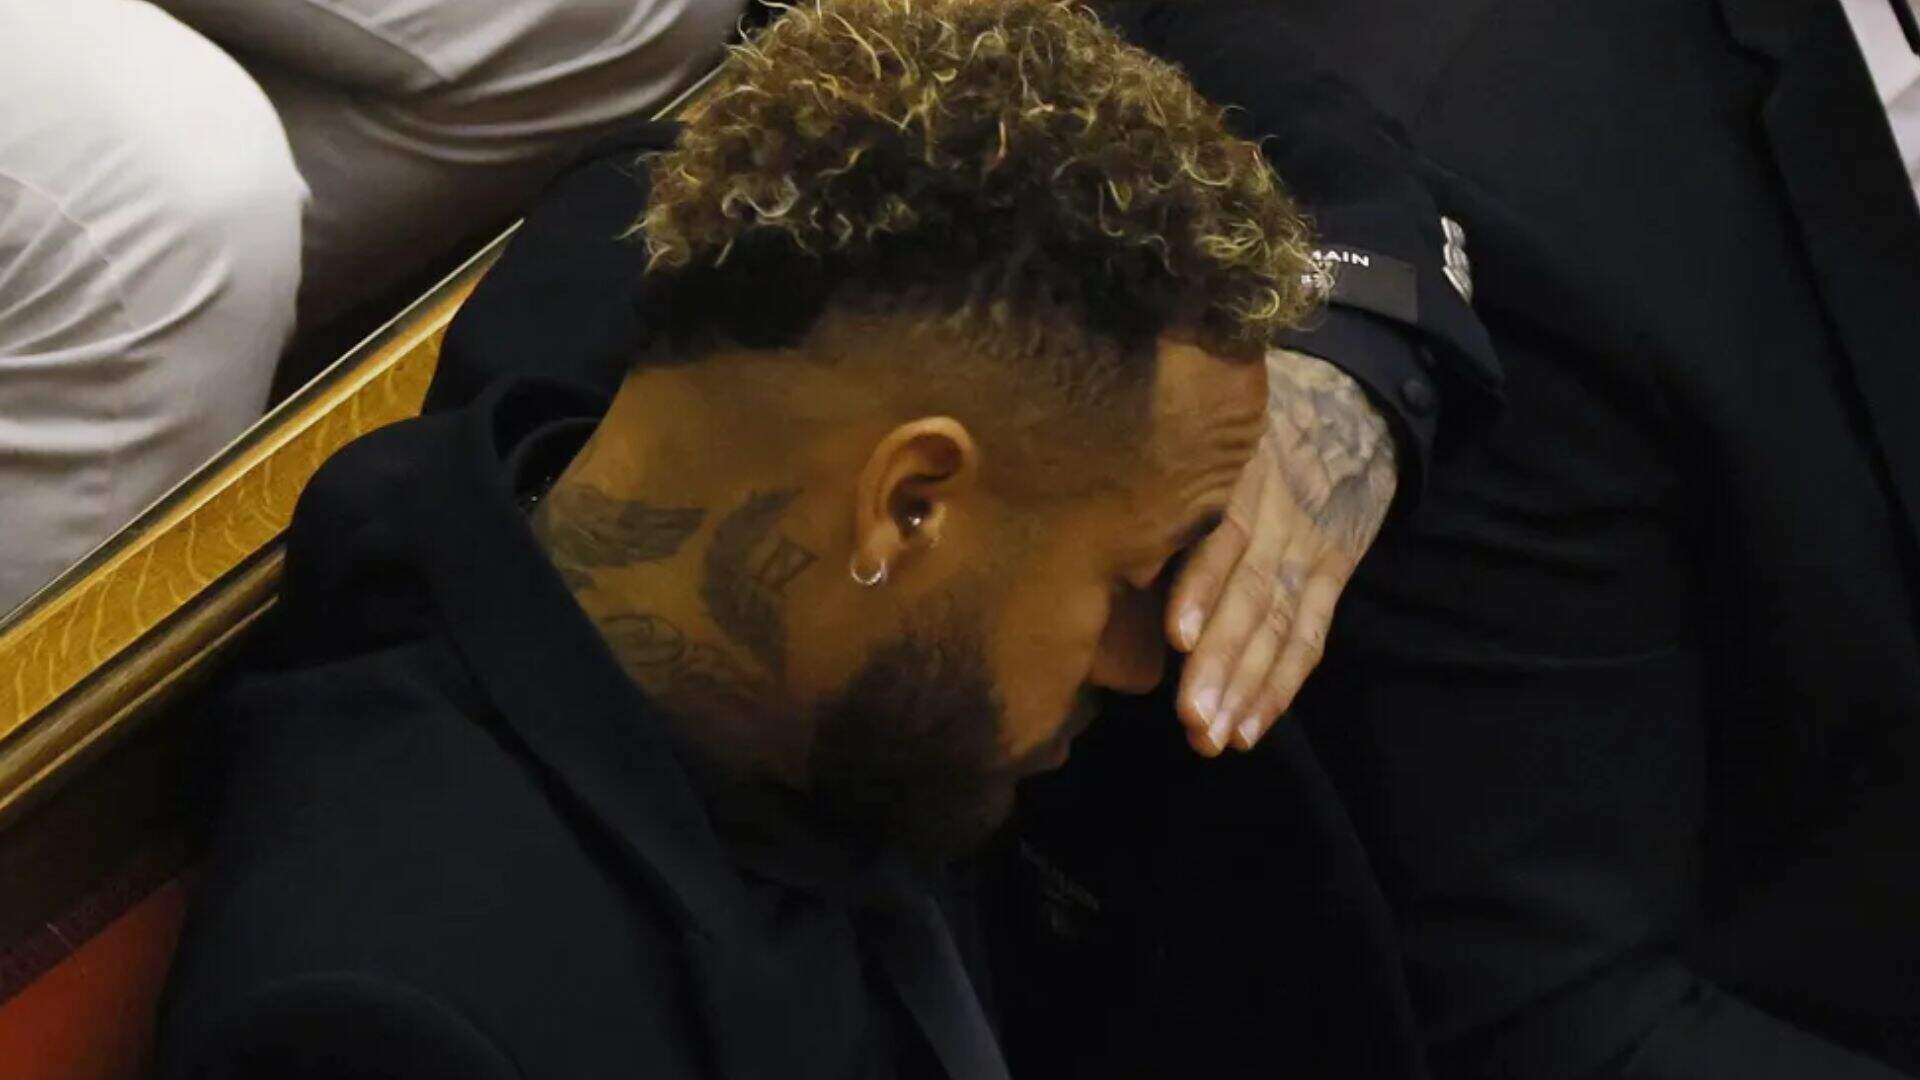 Culpa do pai? Após julgamento polêmico, Neymar Jr explica o que aconteceu: “Sempre cuidou” - Metropolitana FM